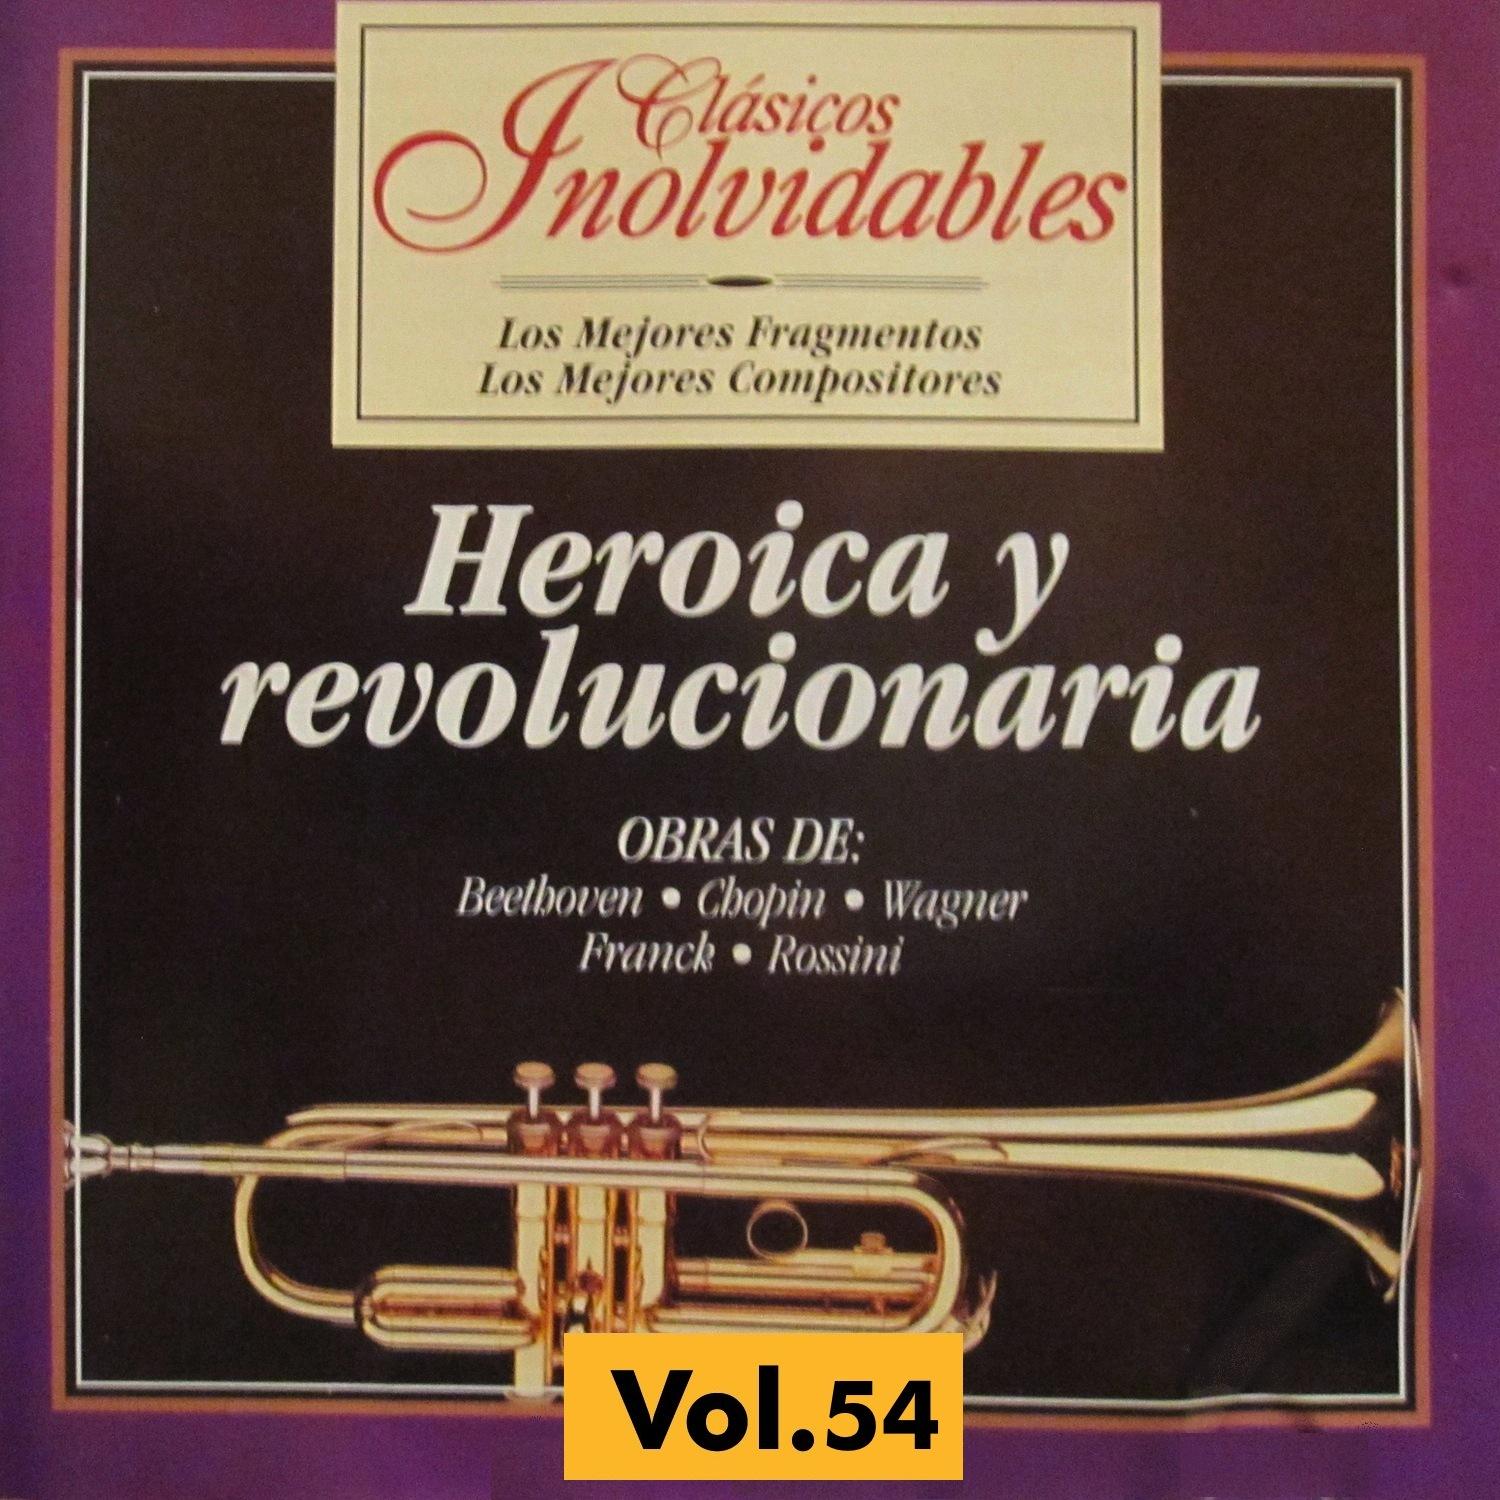 Cla sicos Inolvidables Vol. 54, Heroica y Revolucionaria